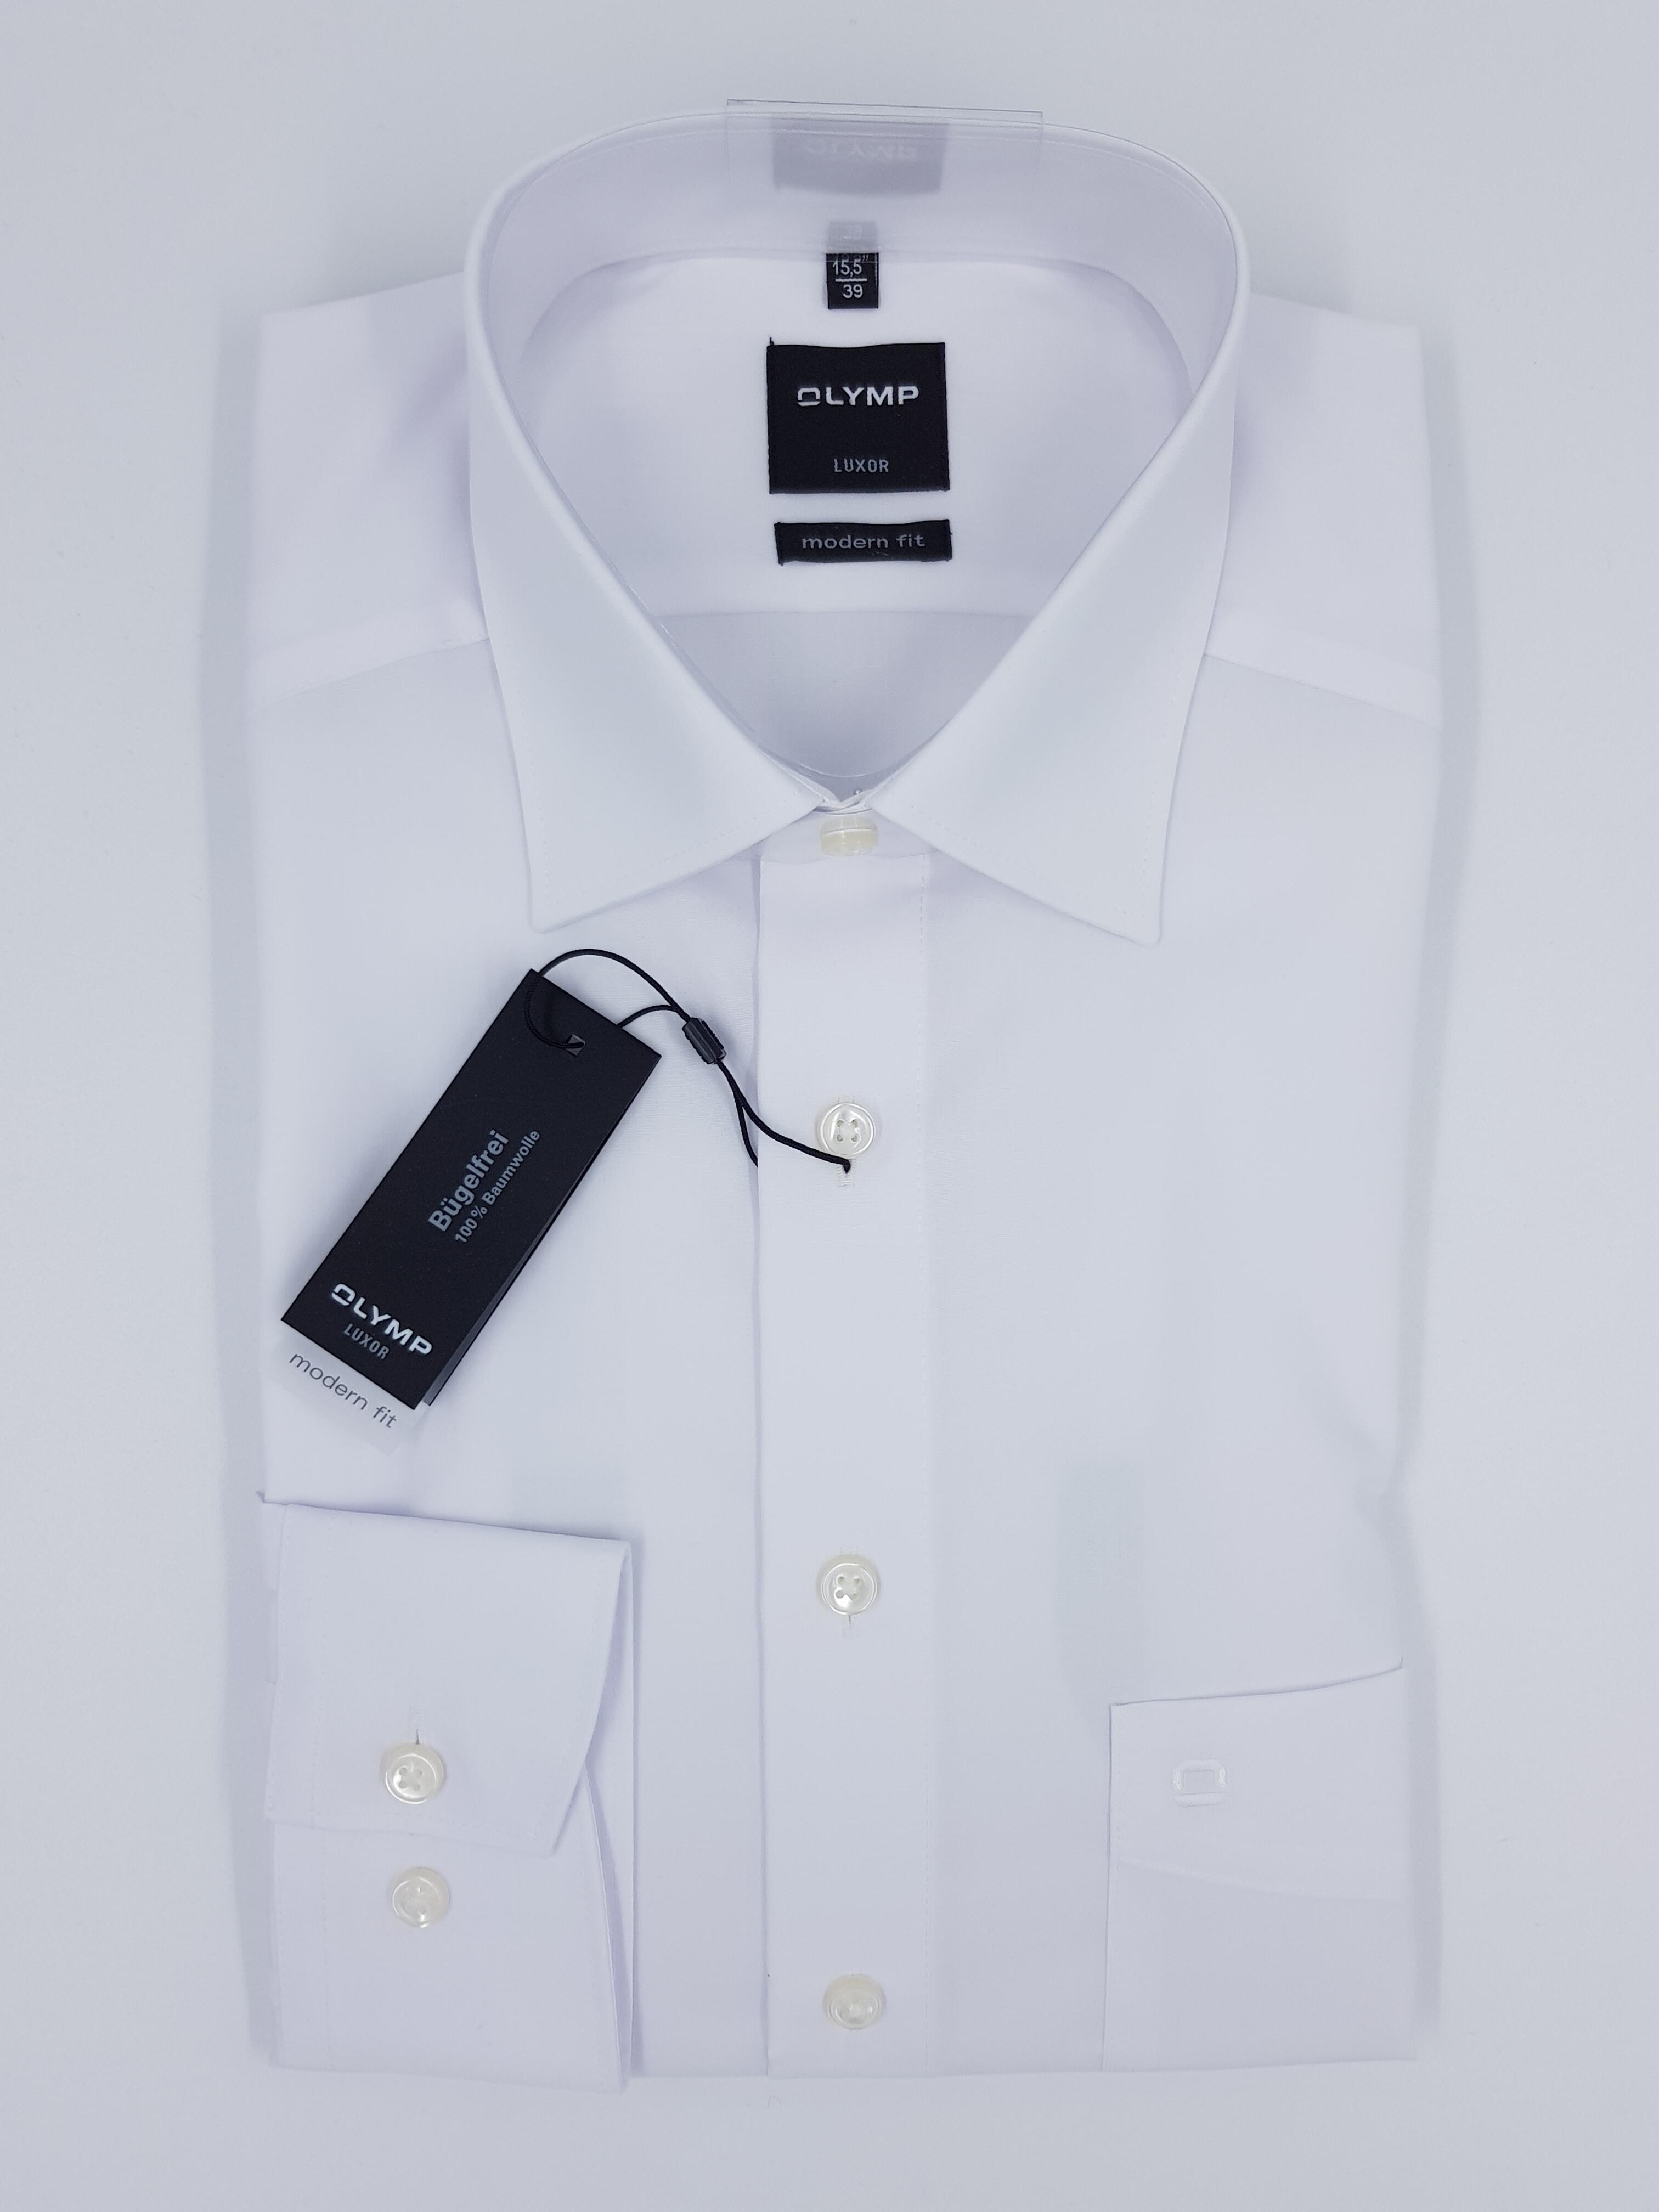 Olymp Olymp Hemd weiß langarm modern fit Bügelfrei Luxor Qualität bei Mode  Schönleitner in Gmunden | Gmunden stilvoll shoppen